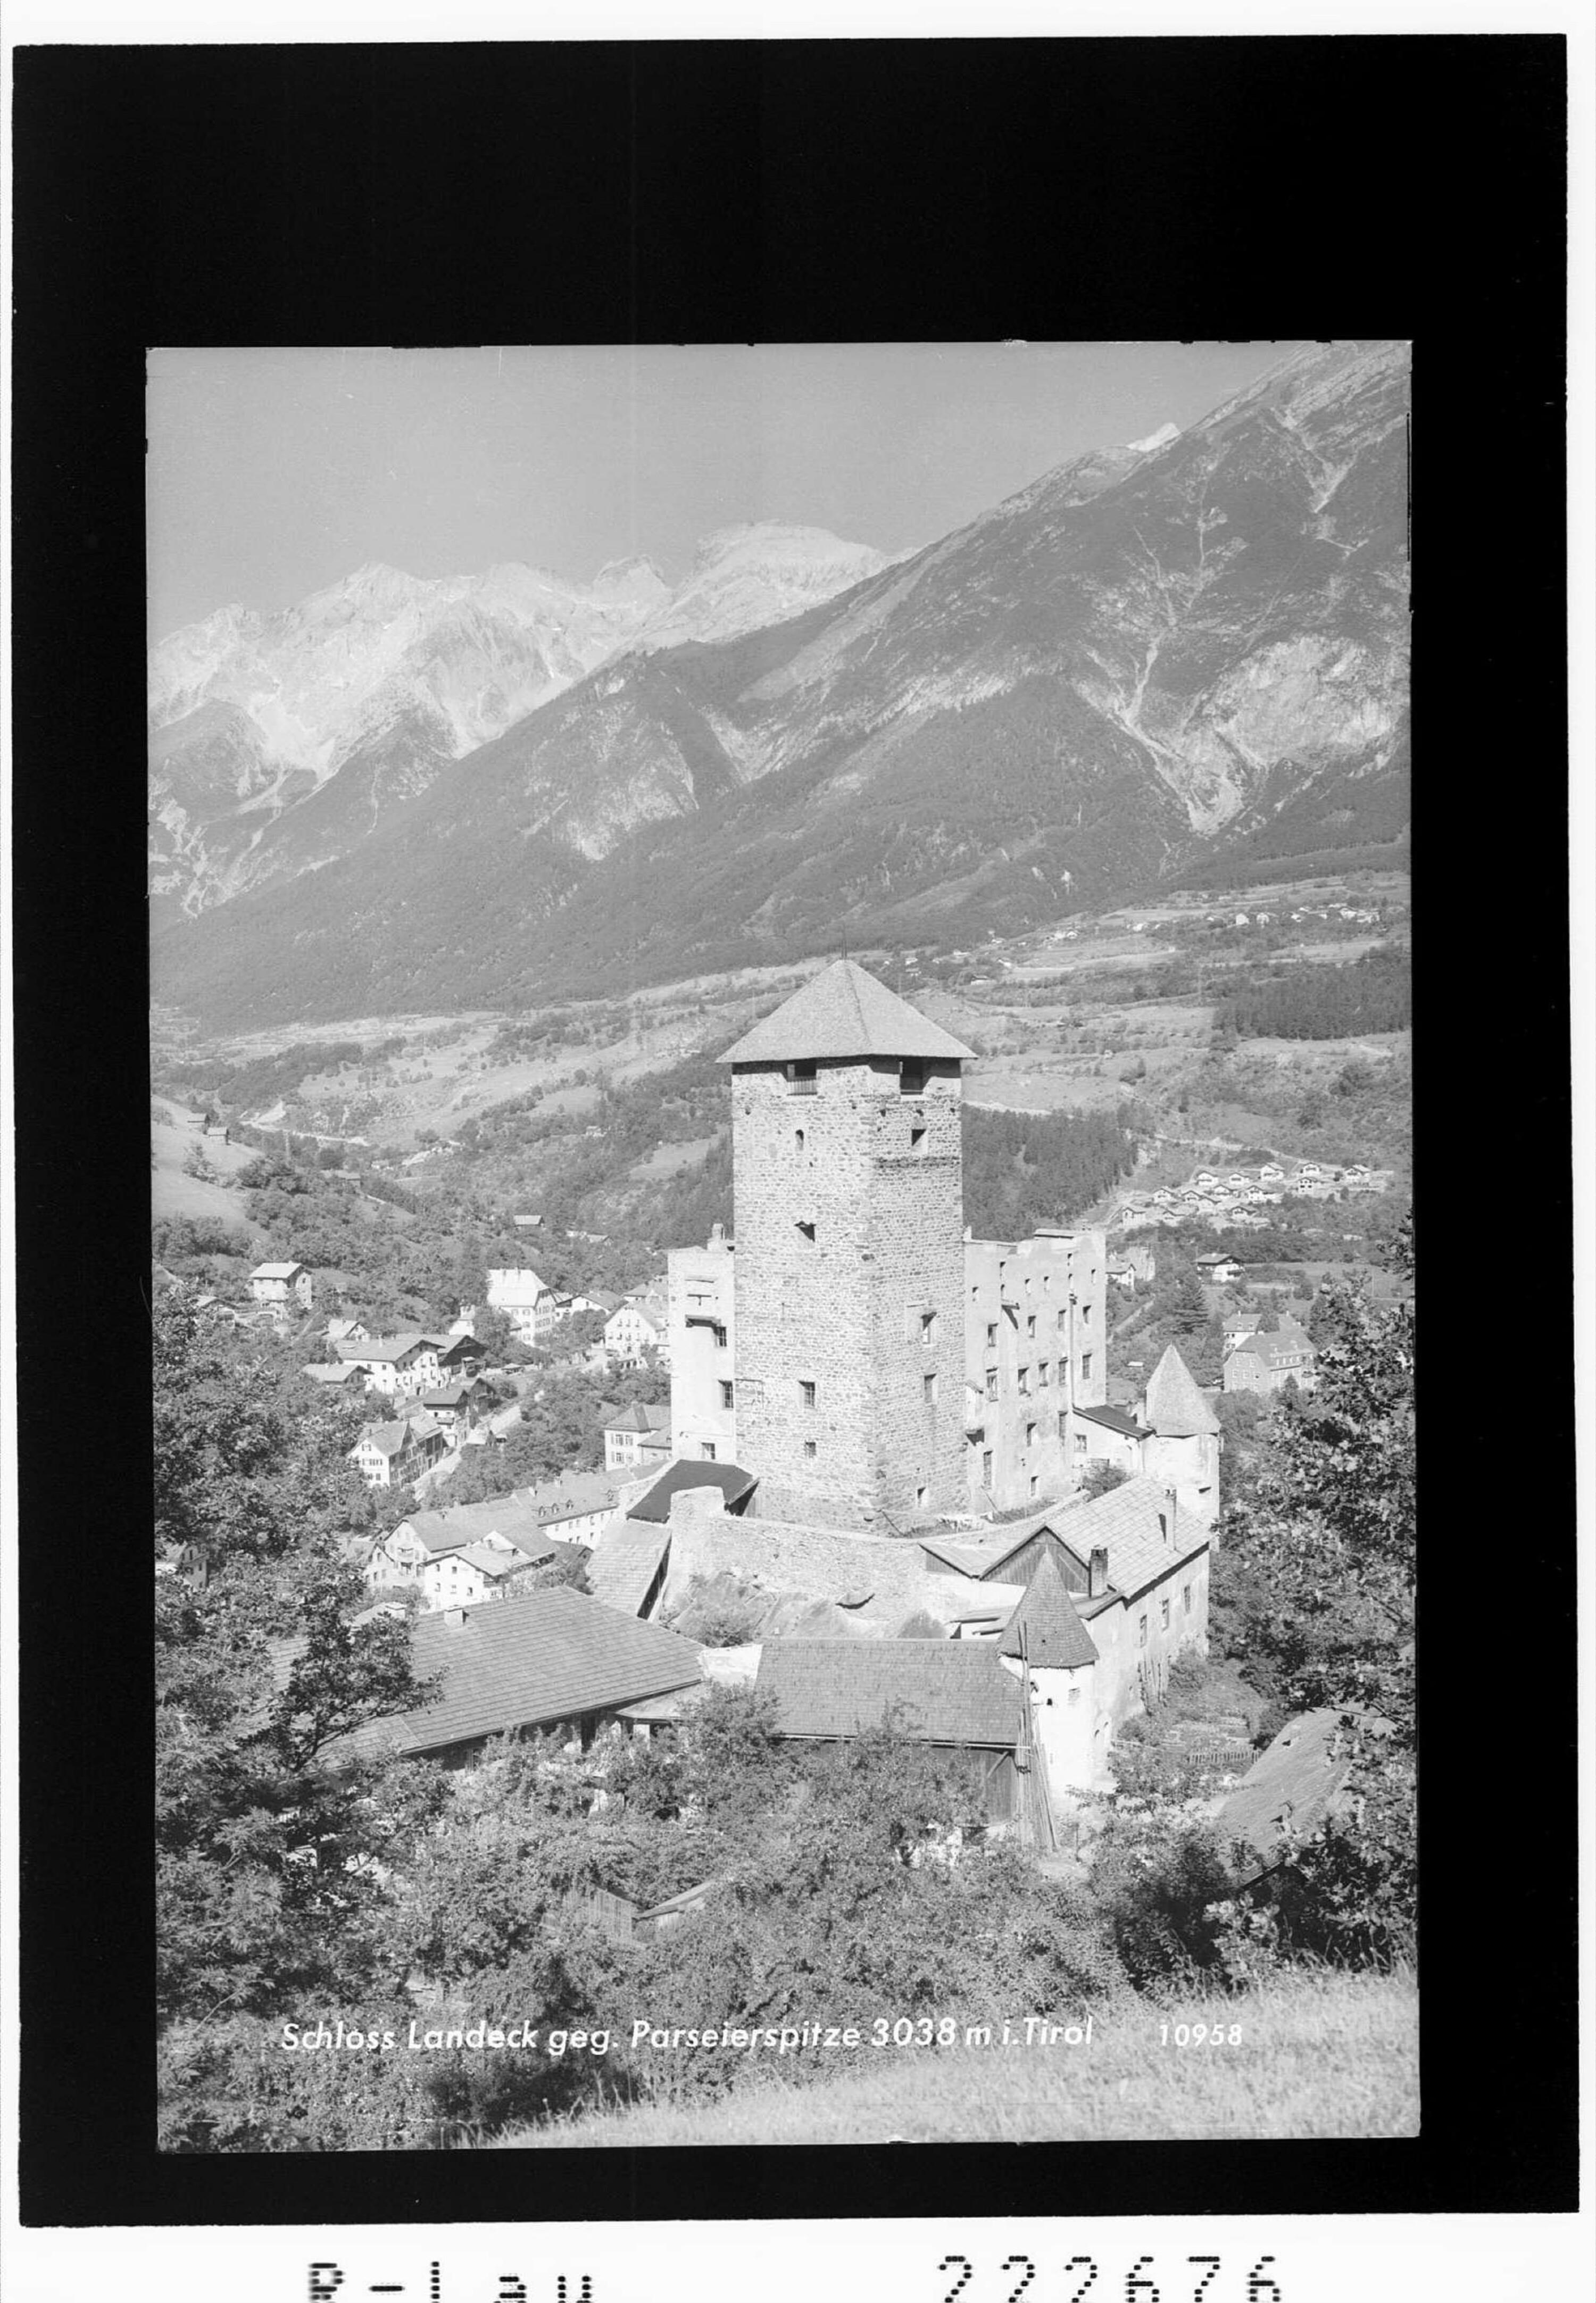 Schloss Landeck gegen Parseierspitze 3038 m in Tirol></div>


    <hr>
    <div class=